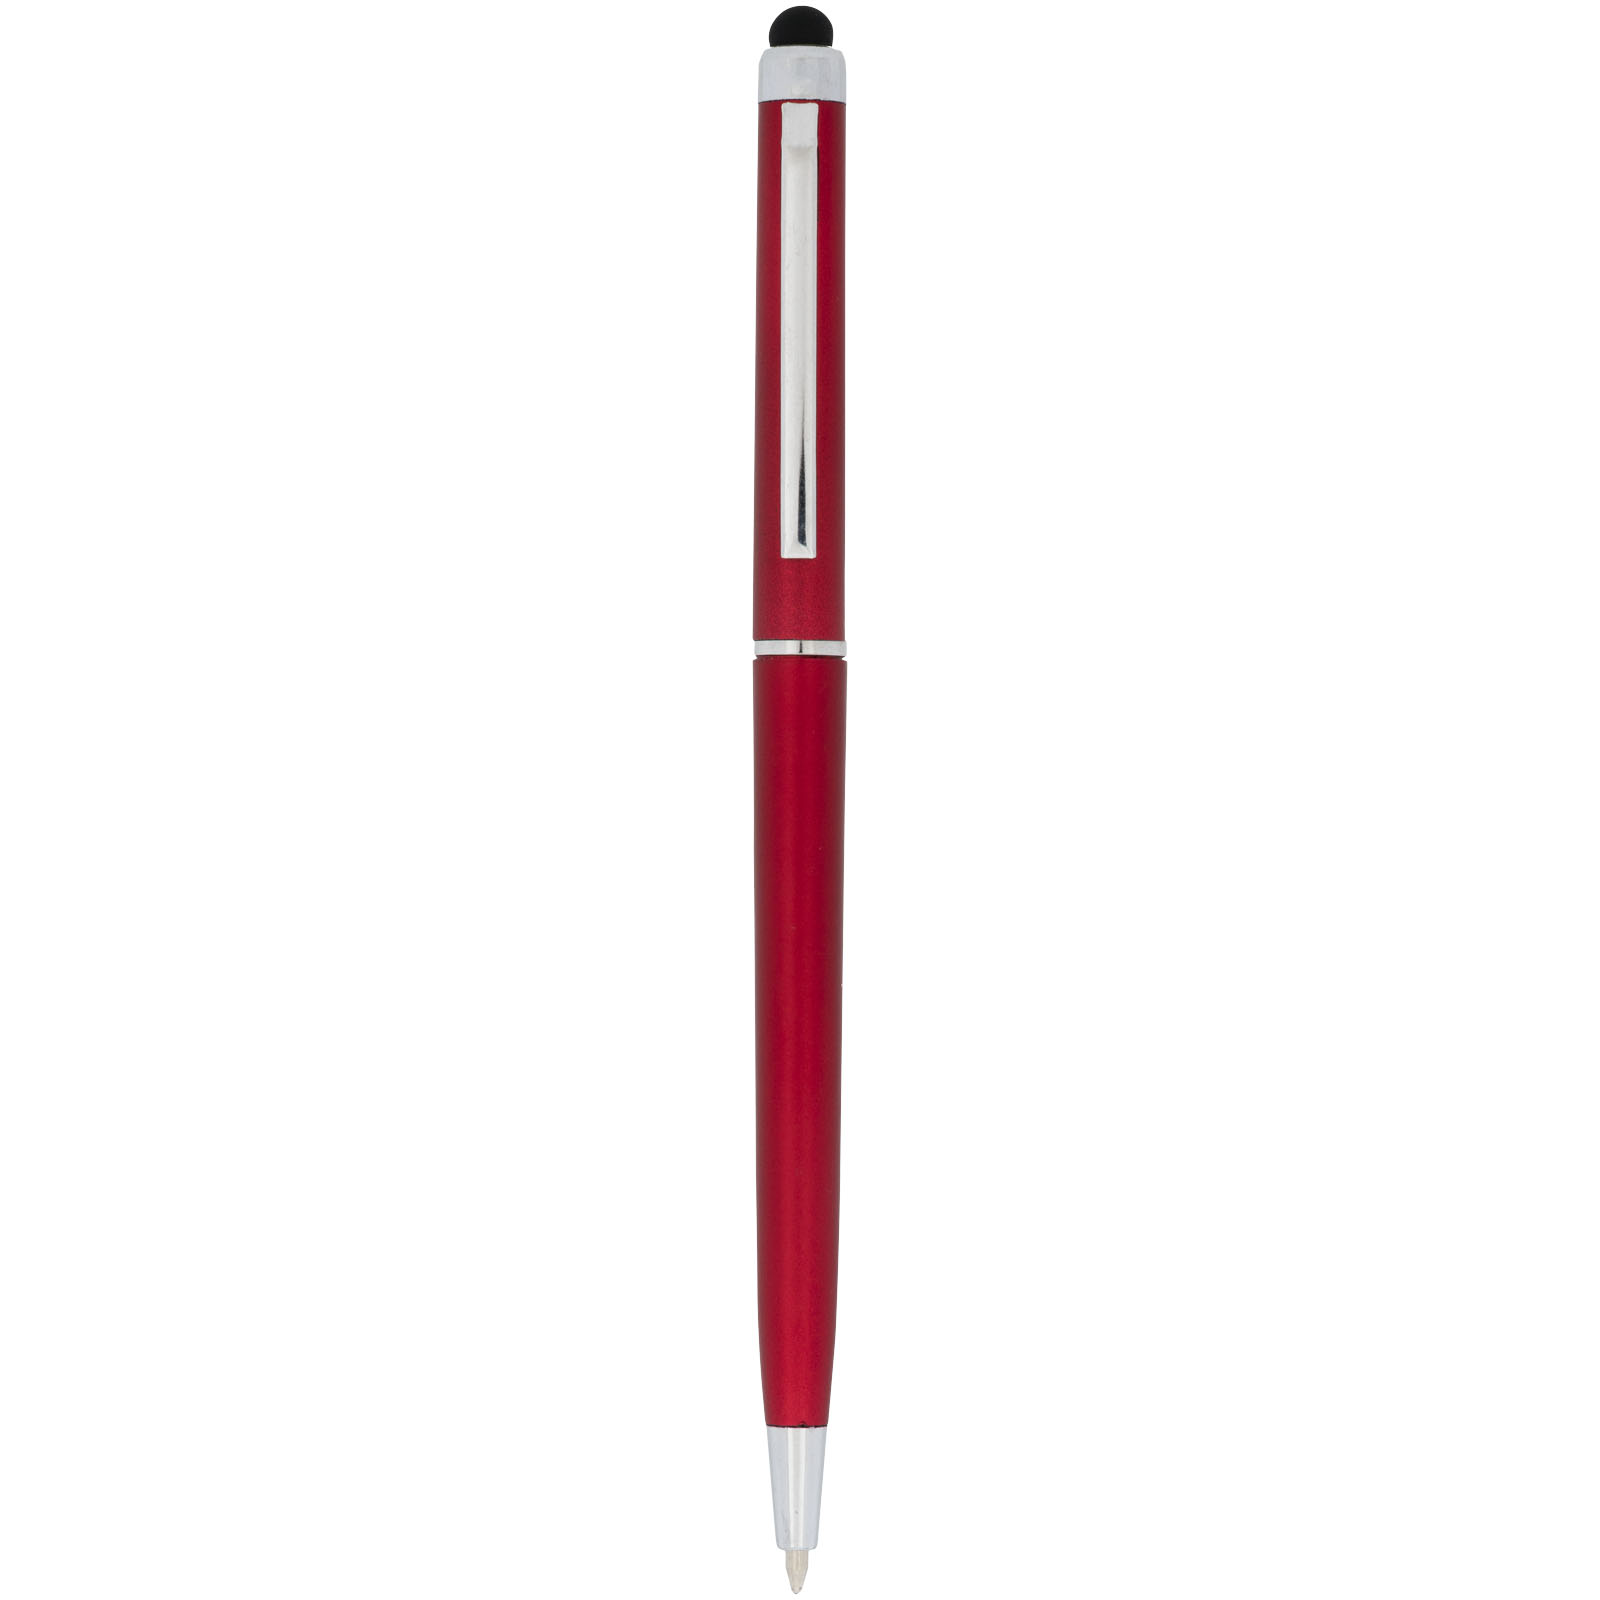 Ballpoint Pens - Valeria ABS ballpoint pen with stylus